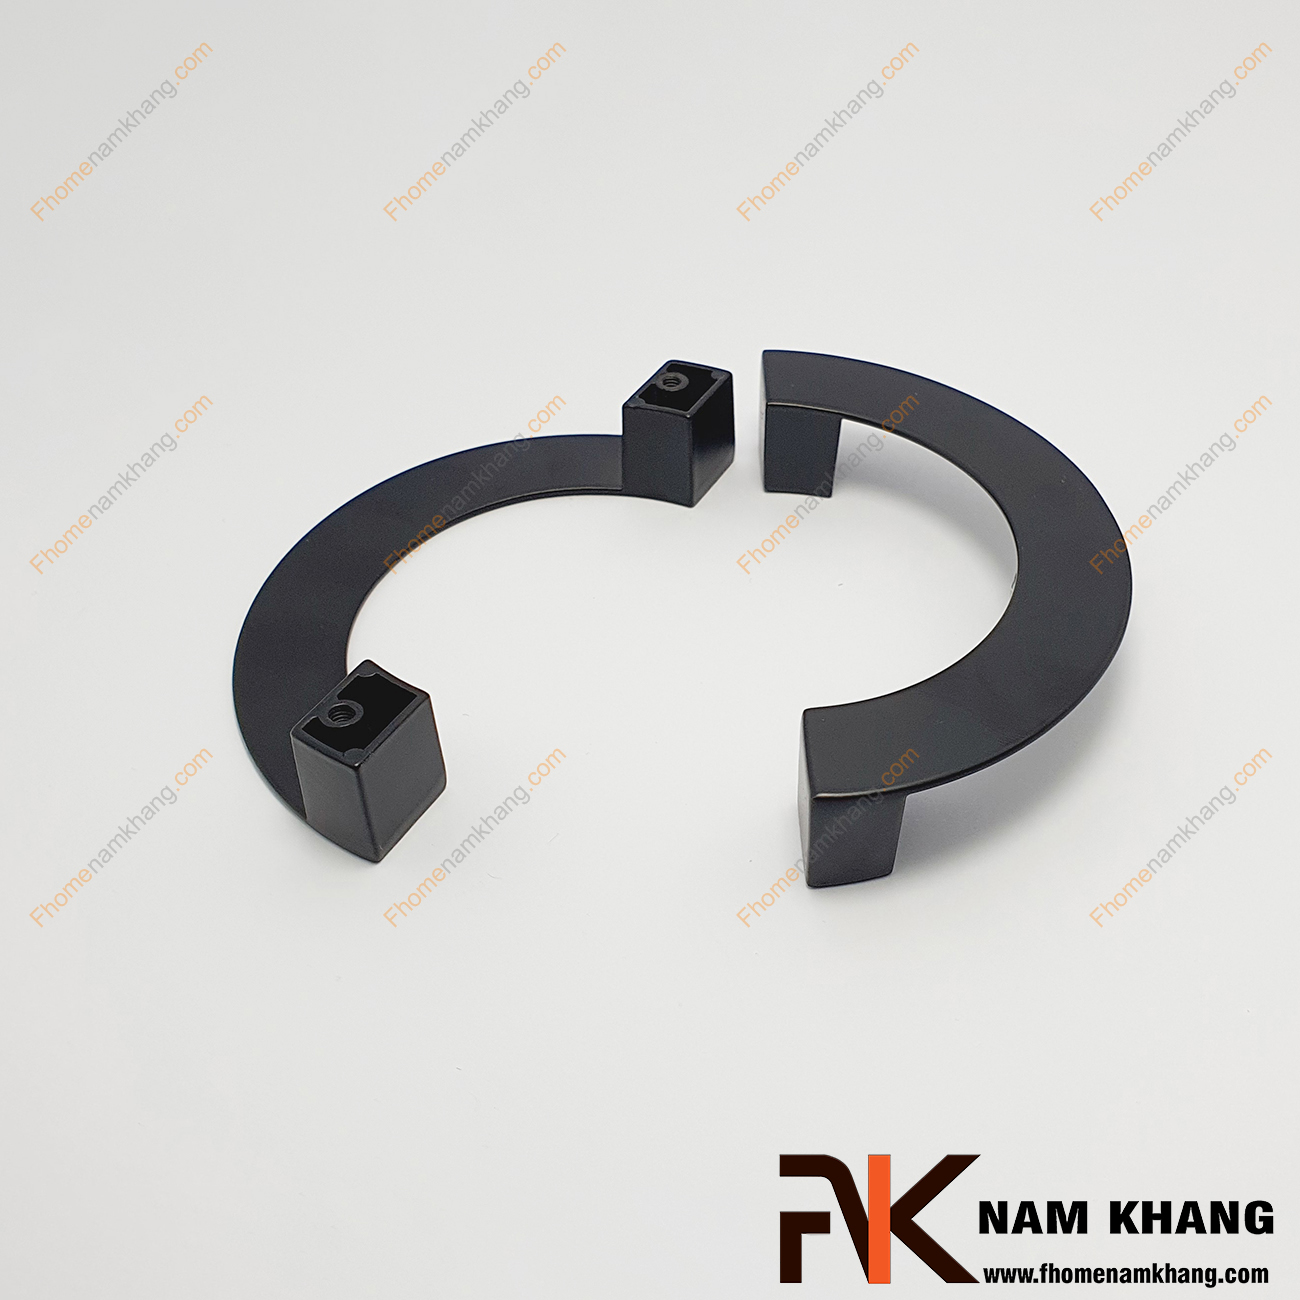 Tay nắm tủ cặp màu đen mờ NK407L-96D là một dạng tay nắm tủ cặp đôi, thường được sử dụng theo bộ để lắp trên các dạng tủ có 2 cánh cửa hoặc có thể sử dụng đơn lẻ trên một số dòng tủ ngăn kéo